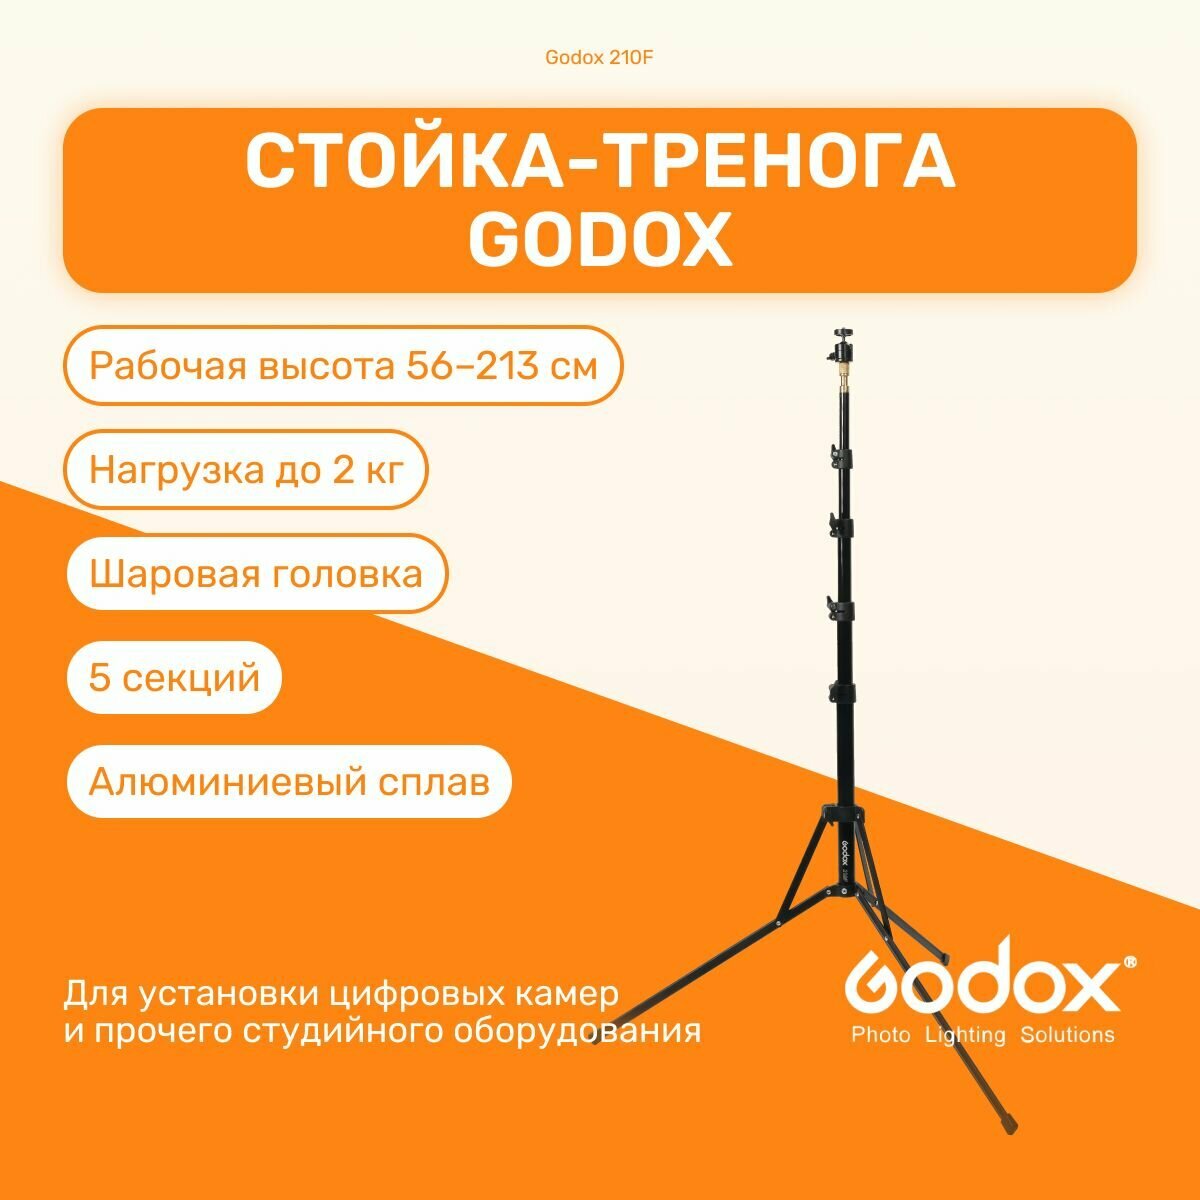 Стойка-тренога Godox 210F 213 см для фото/видеостудии, универсвльная, для светового оборудования, фотозоны, штатив